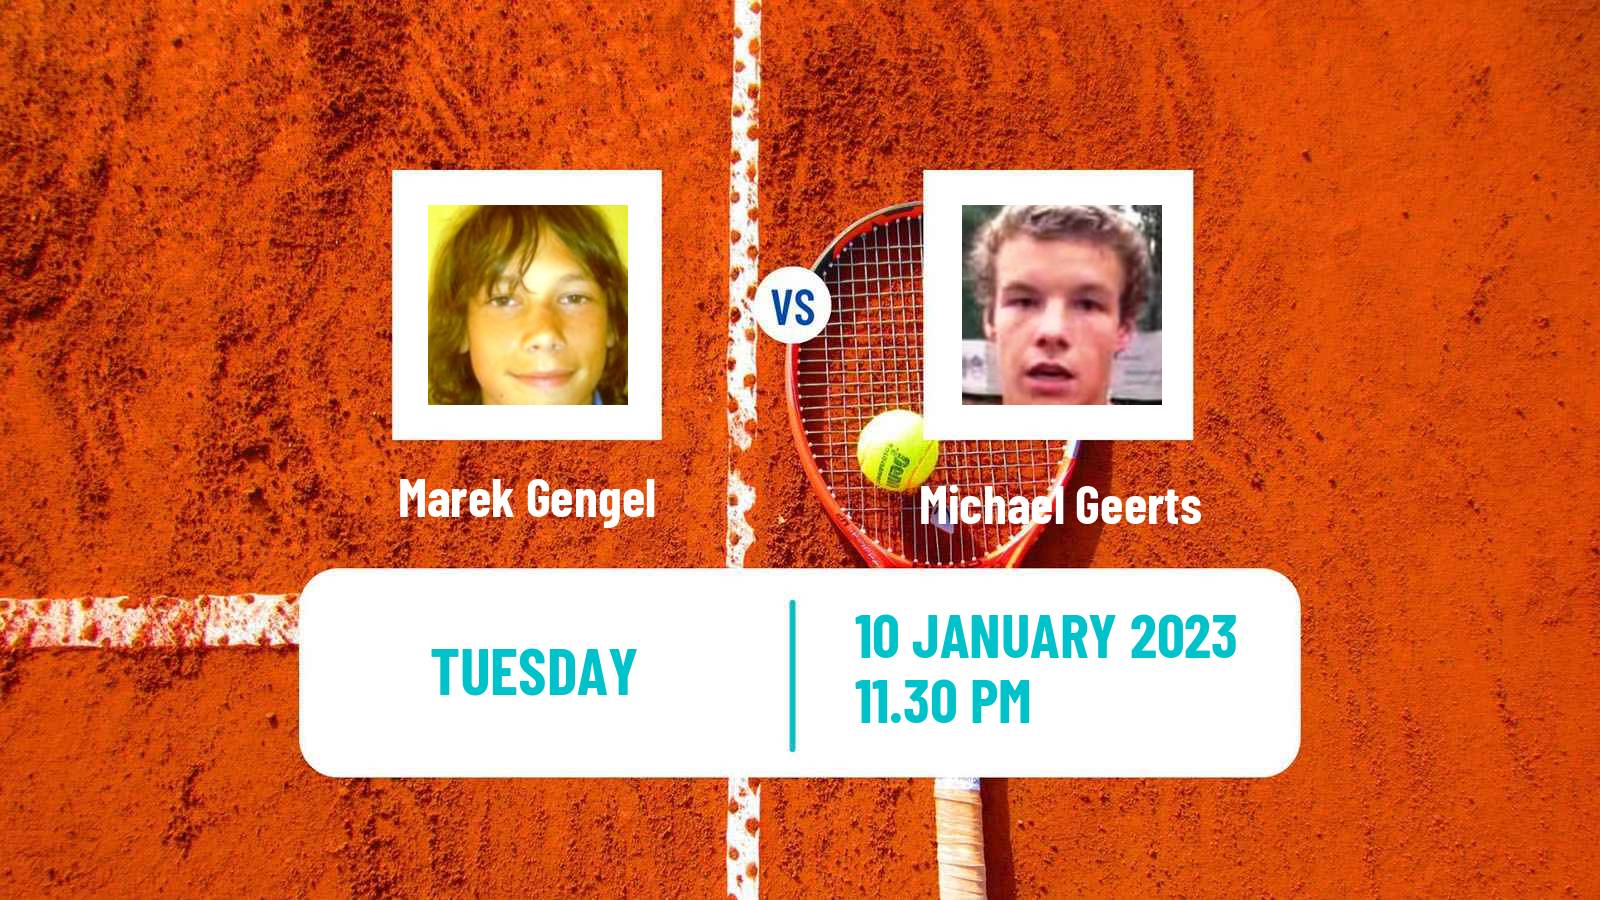 Tennis ATP Challenger Marek Gengel - Michael Geerts